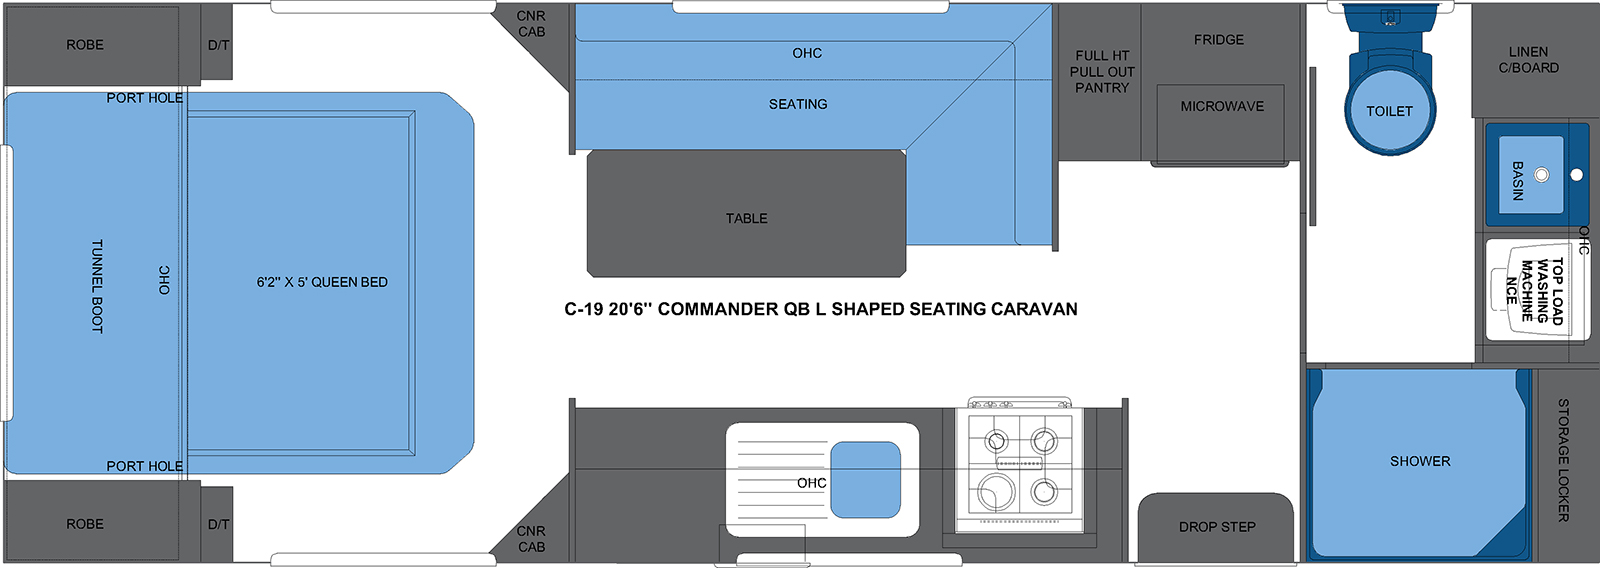 C-19 20'6 COMMANDER QB L SHAPED SEATING CARAVAN